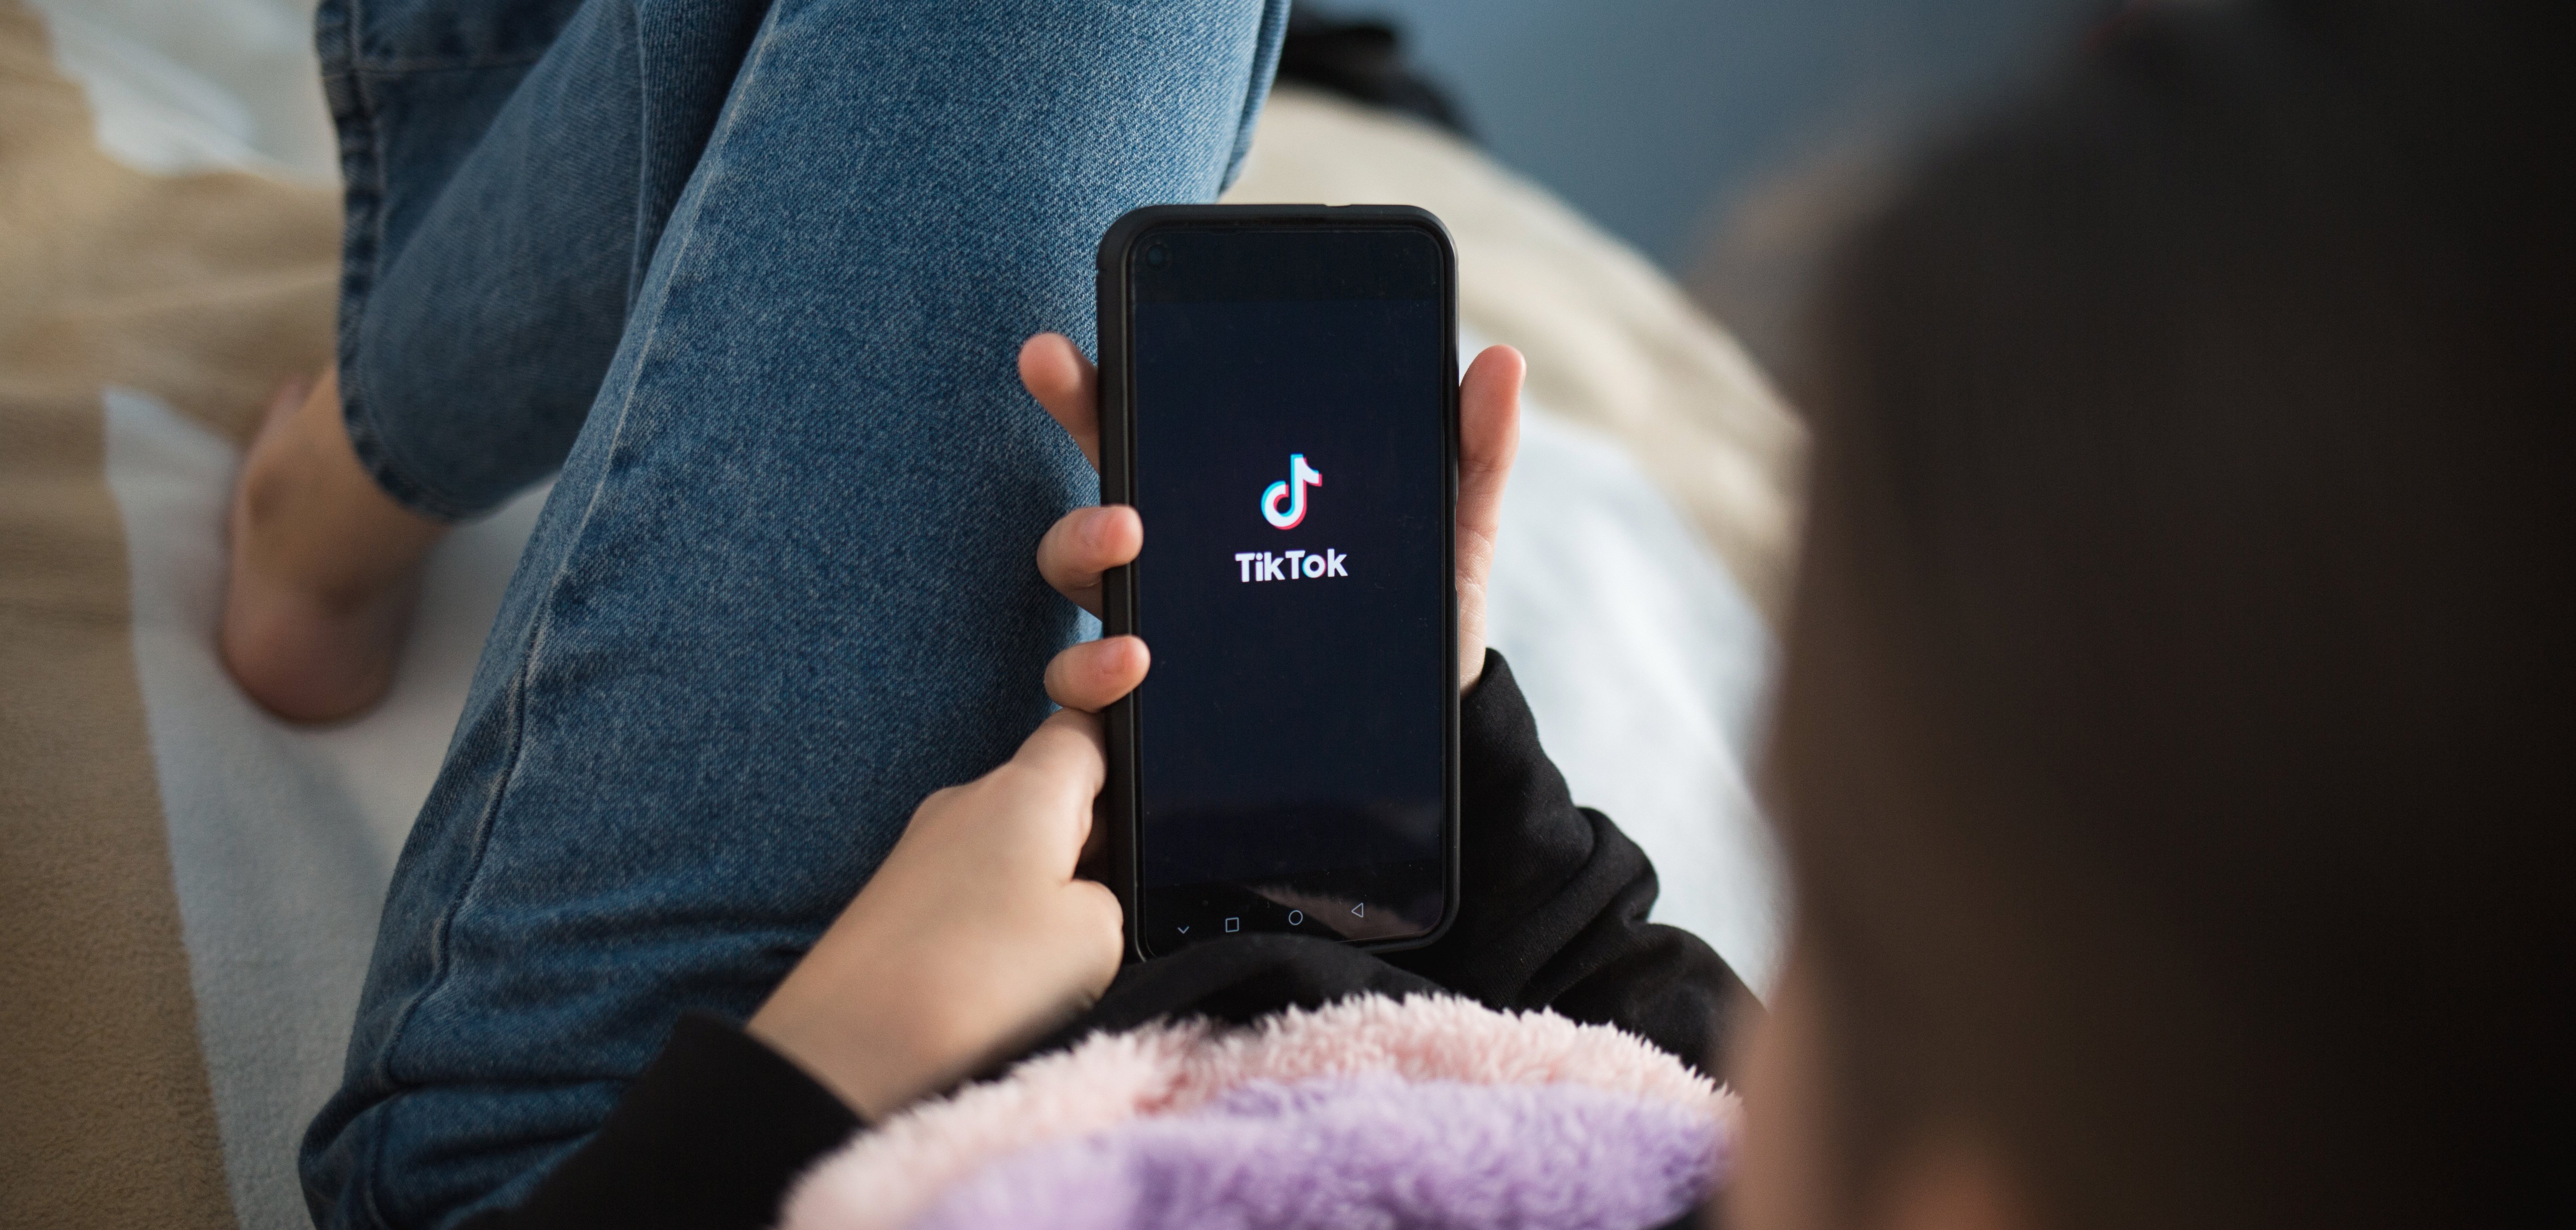 Junges Kind liegt auf dem Bett und hält ein Handy in der Hand. Das Logo von der Social Media App TikTok ist auf dem Bildschirm.